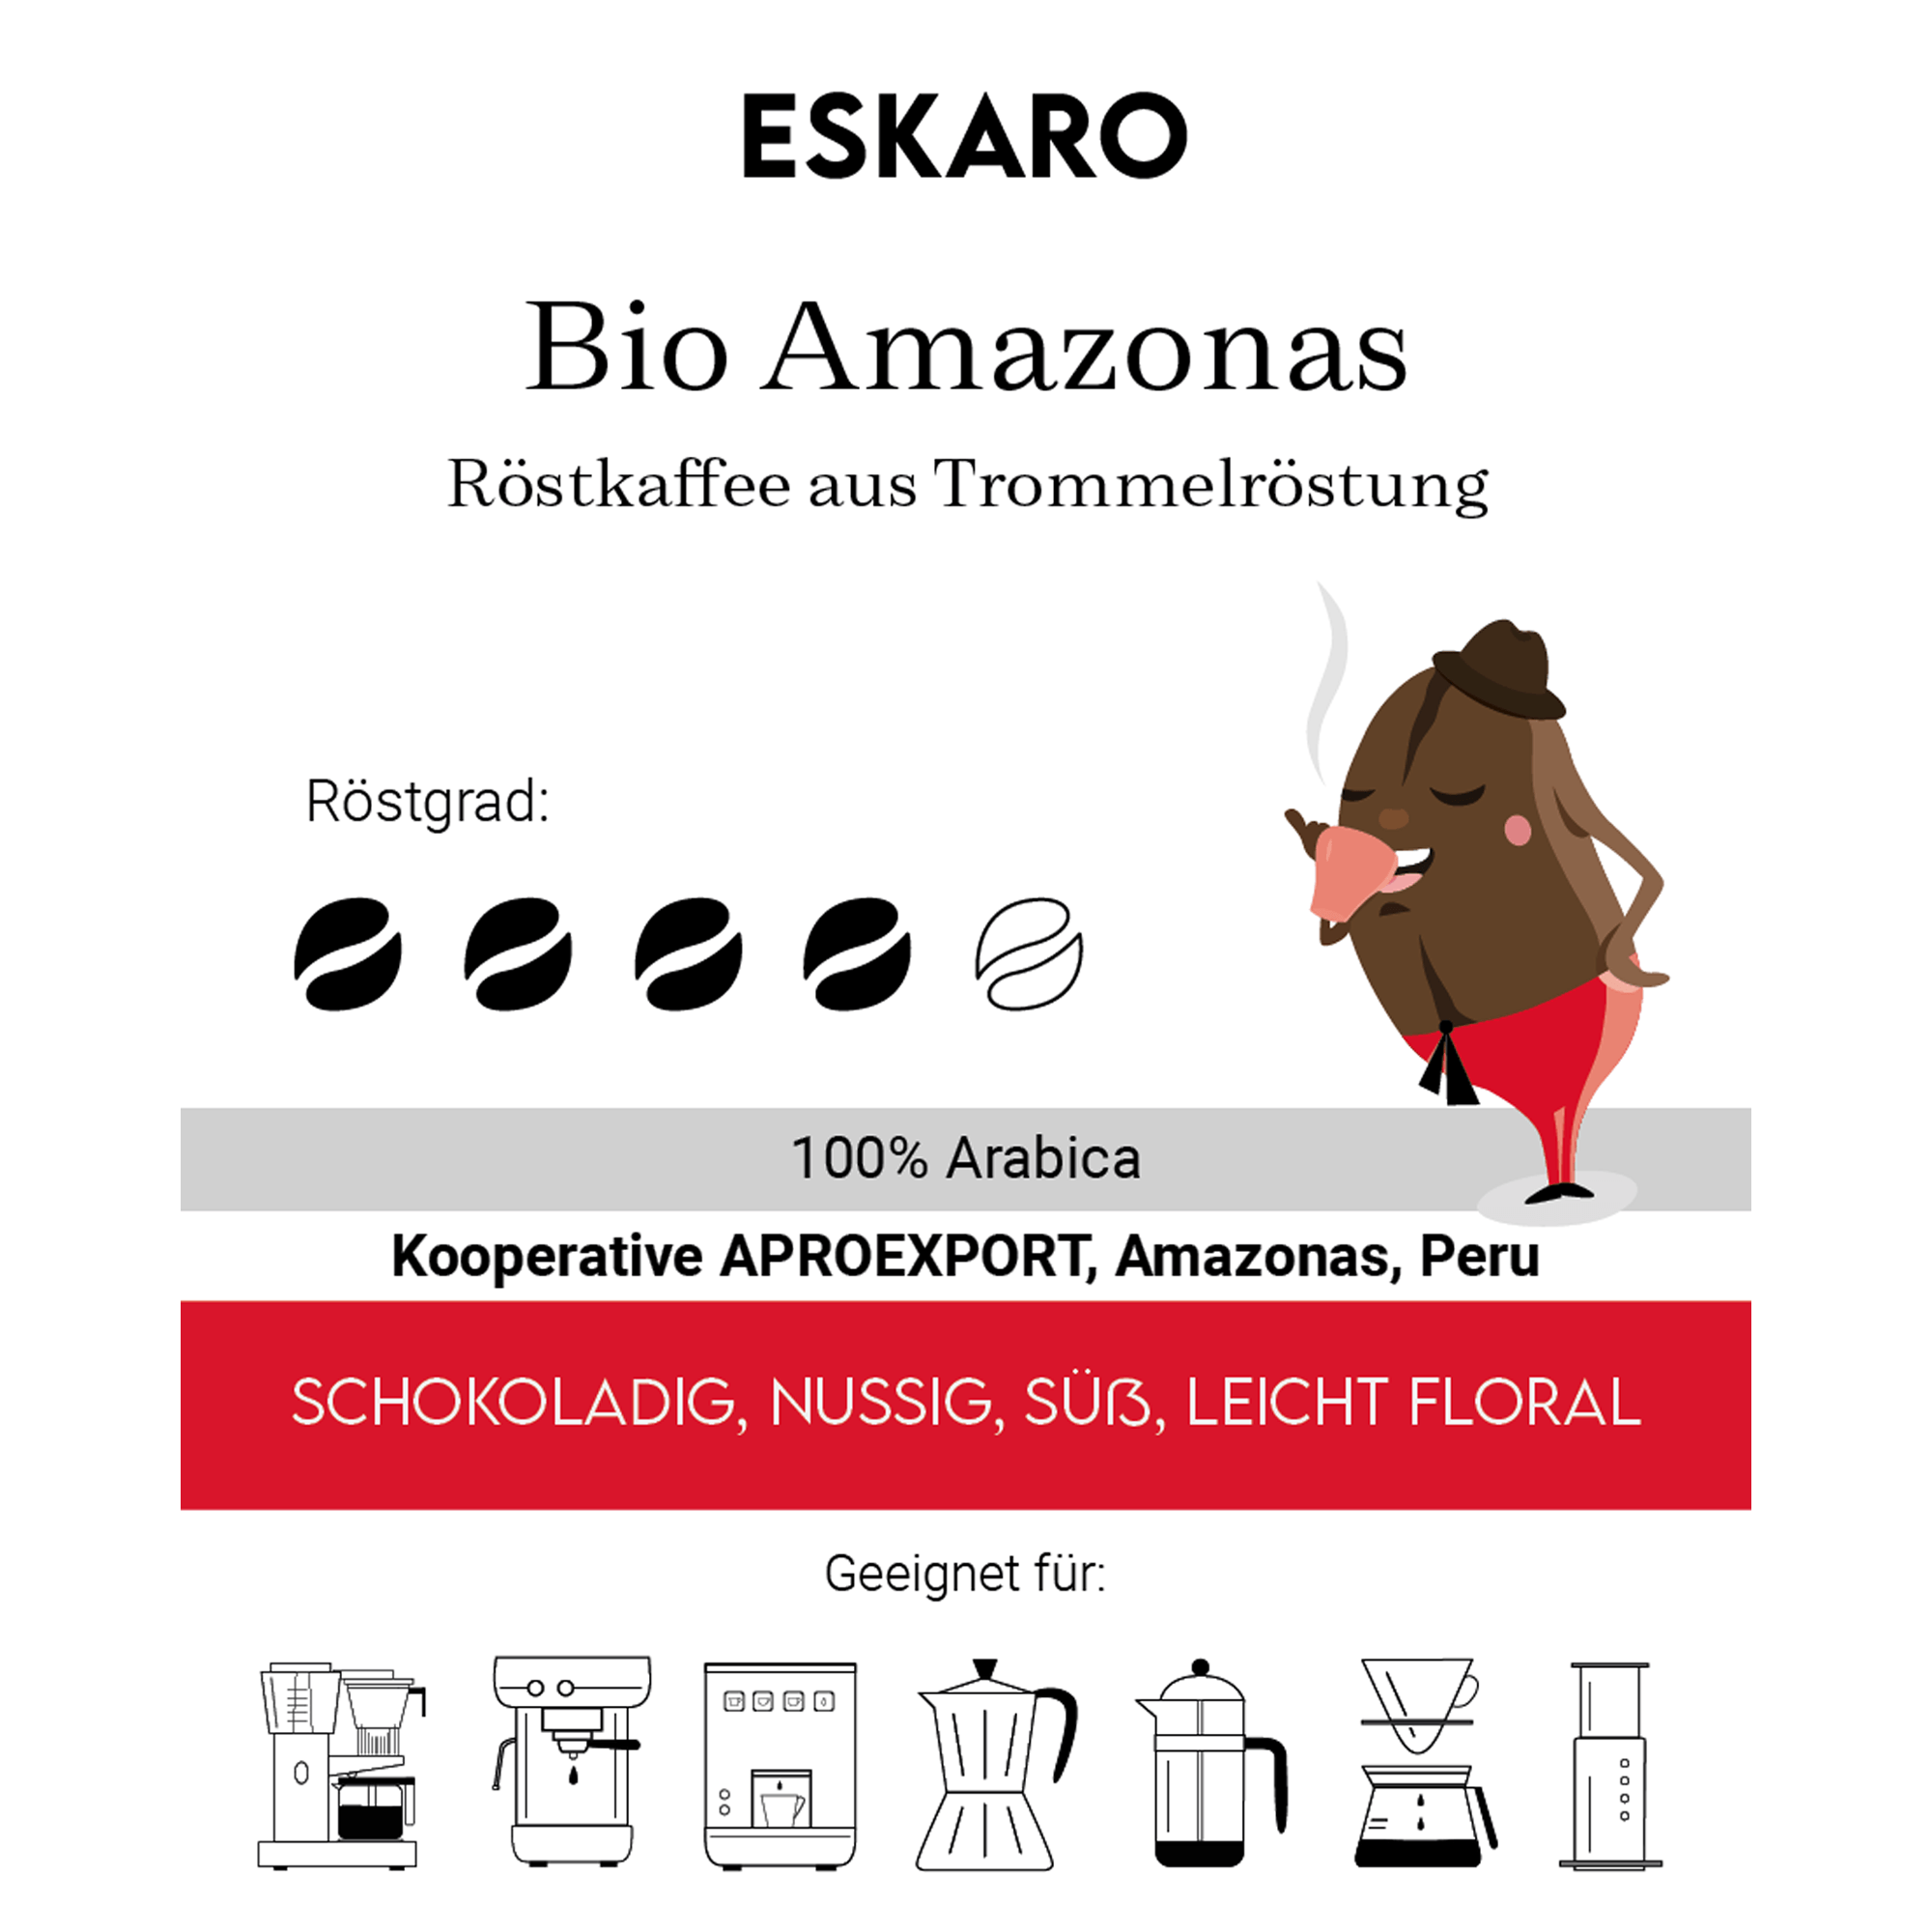 Eskaro Bio Amazonas - Eskaro - Esser Kaffeerösterei und Handelsgesellschaft mbH